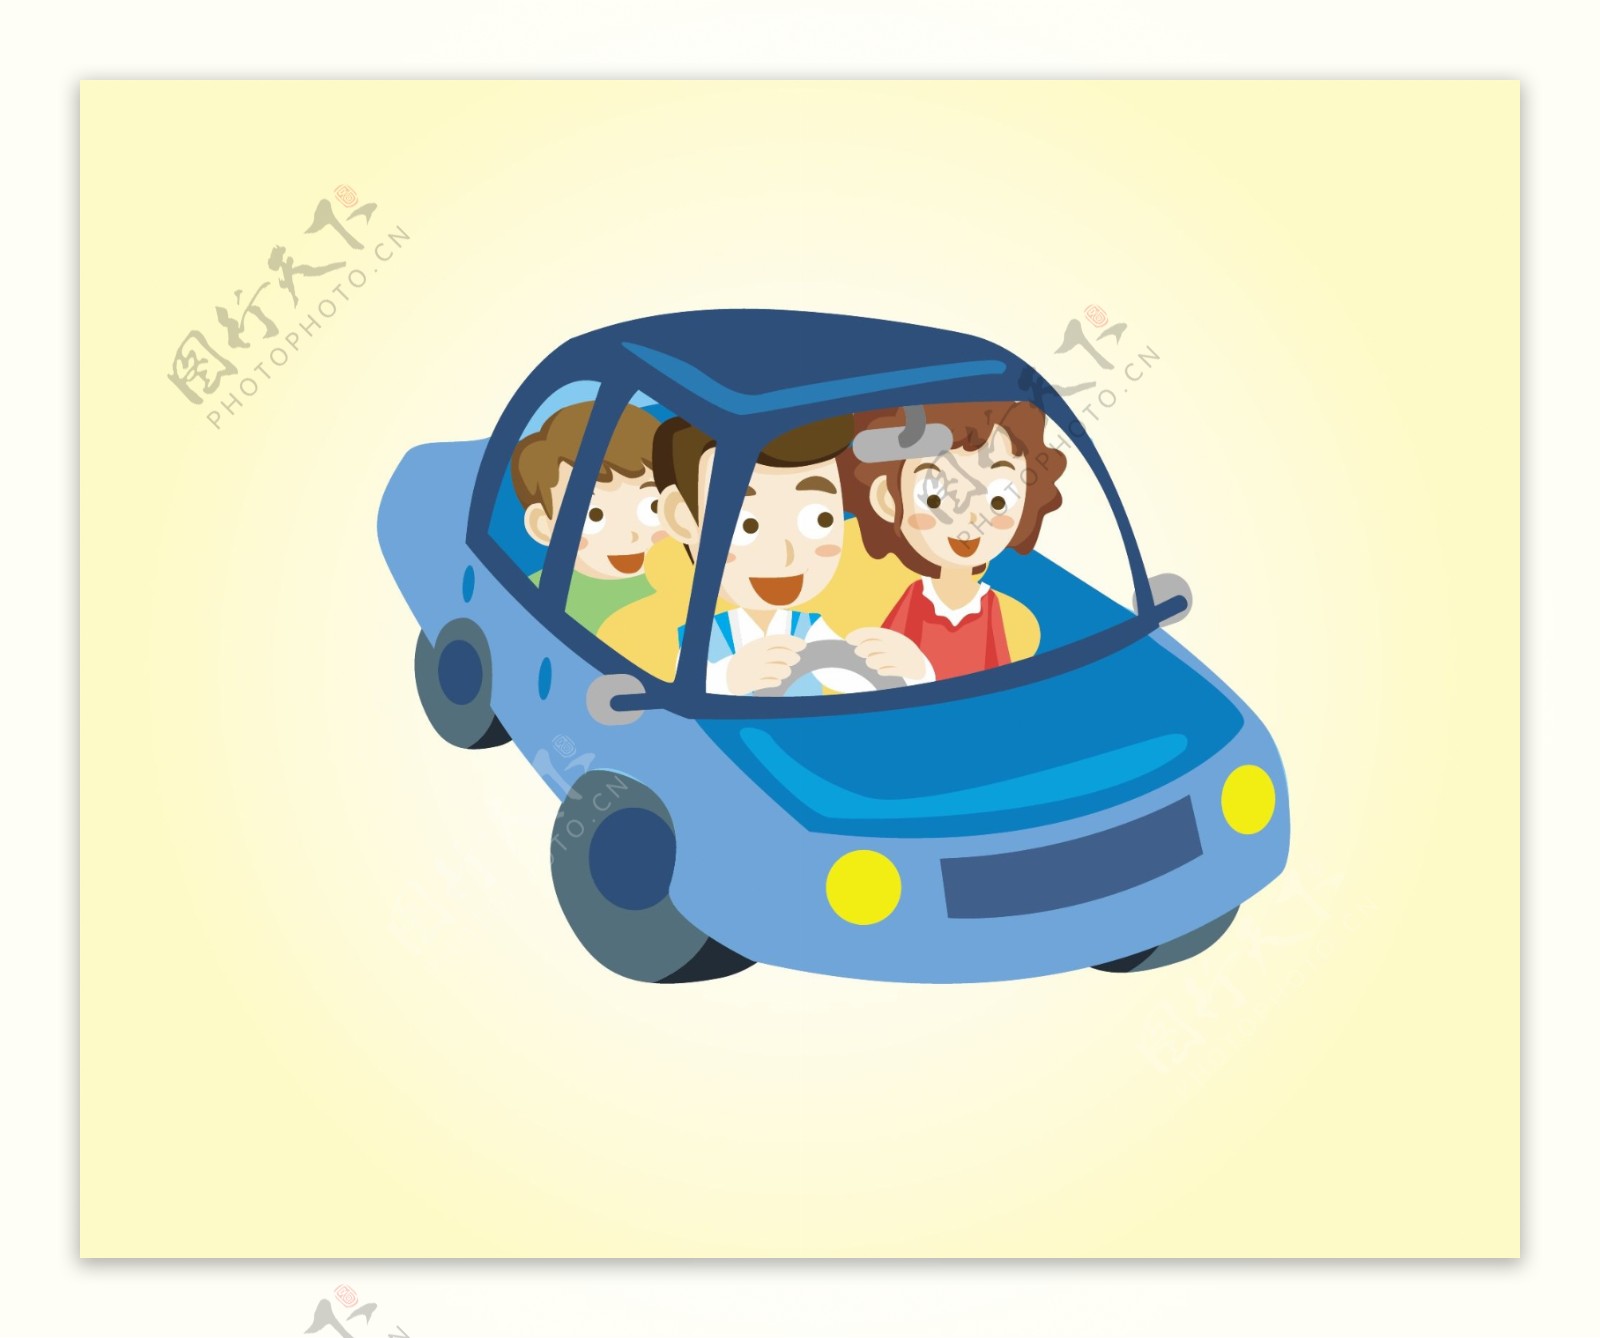 儿童驾驶电动玩具车驶上机动车道(图)